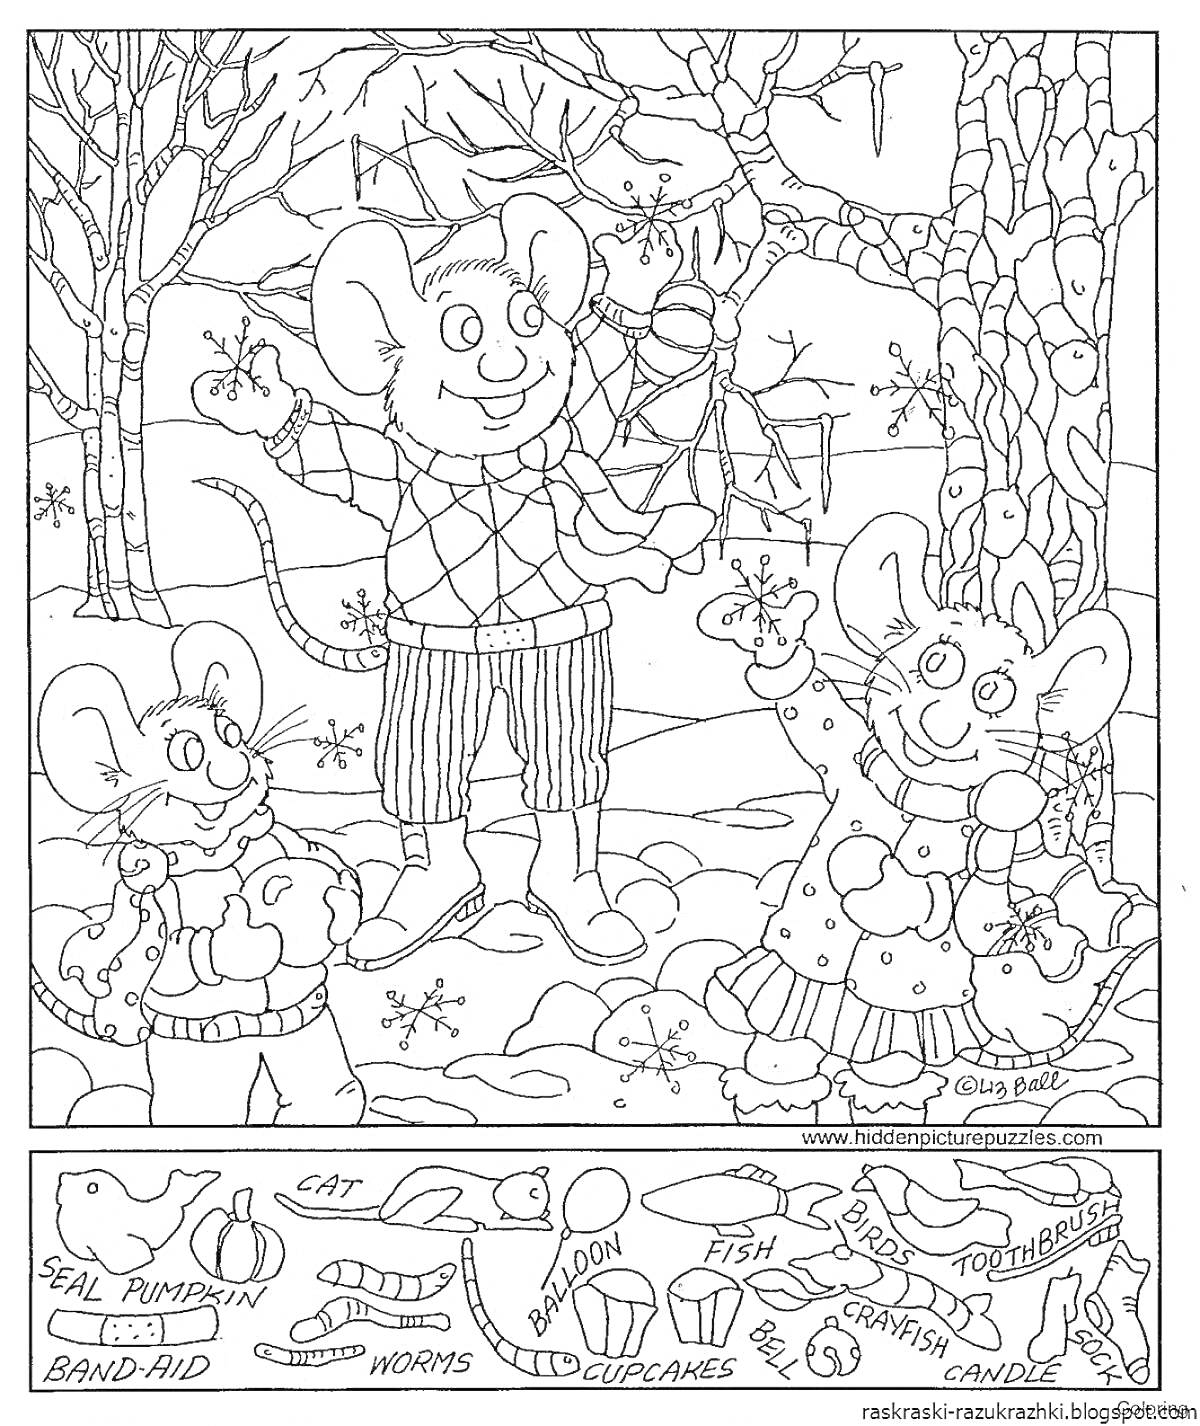 Раскраска Мыши в зимнем лесу с предметами для поиска (тюлень, тыква, лейкопластырь, кошка, червяки, банан, рыба, цветы, кекс, конфета)